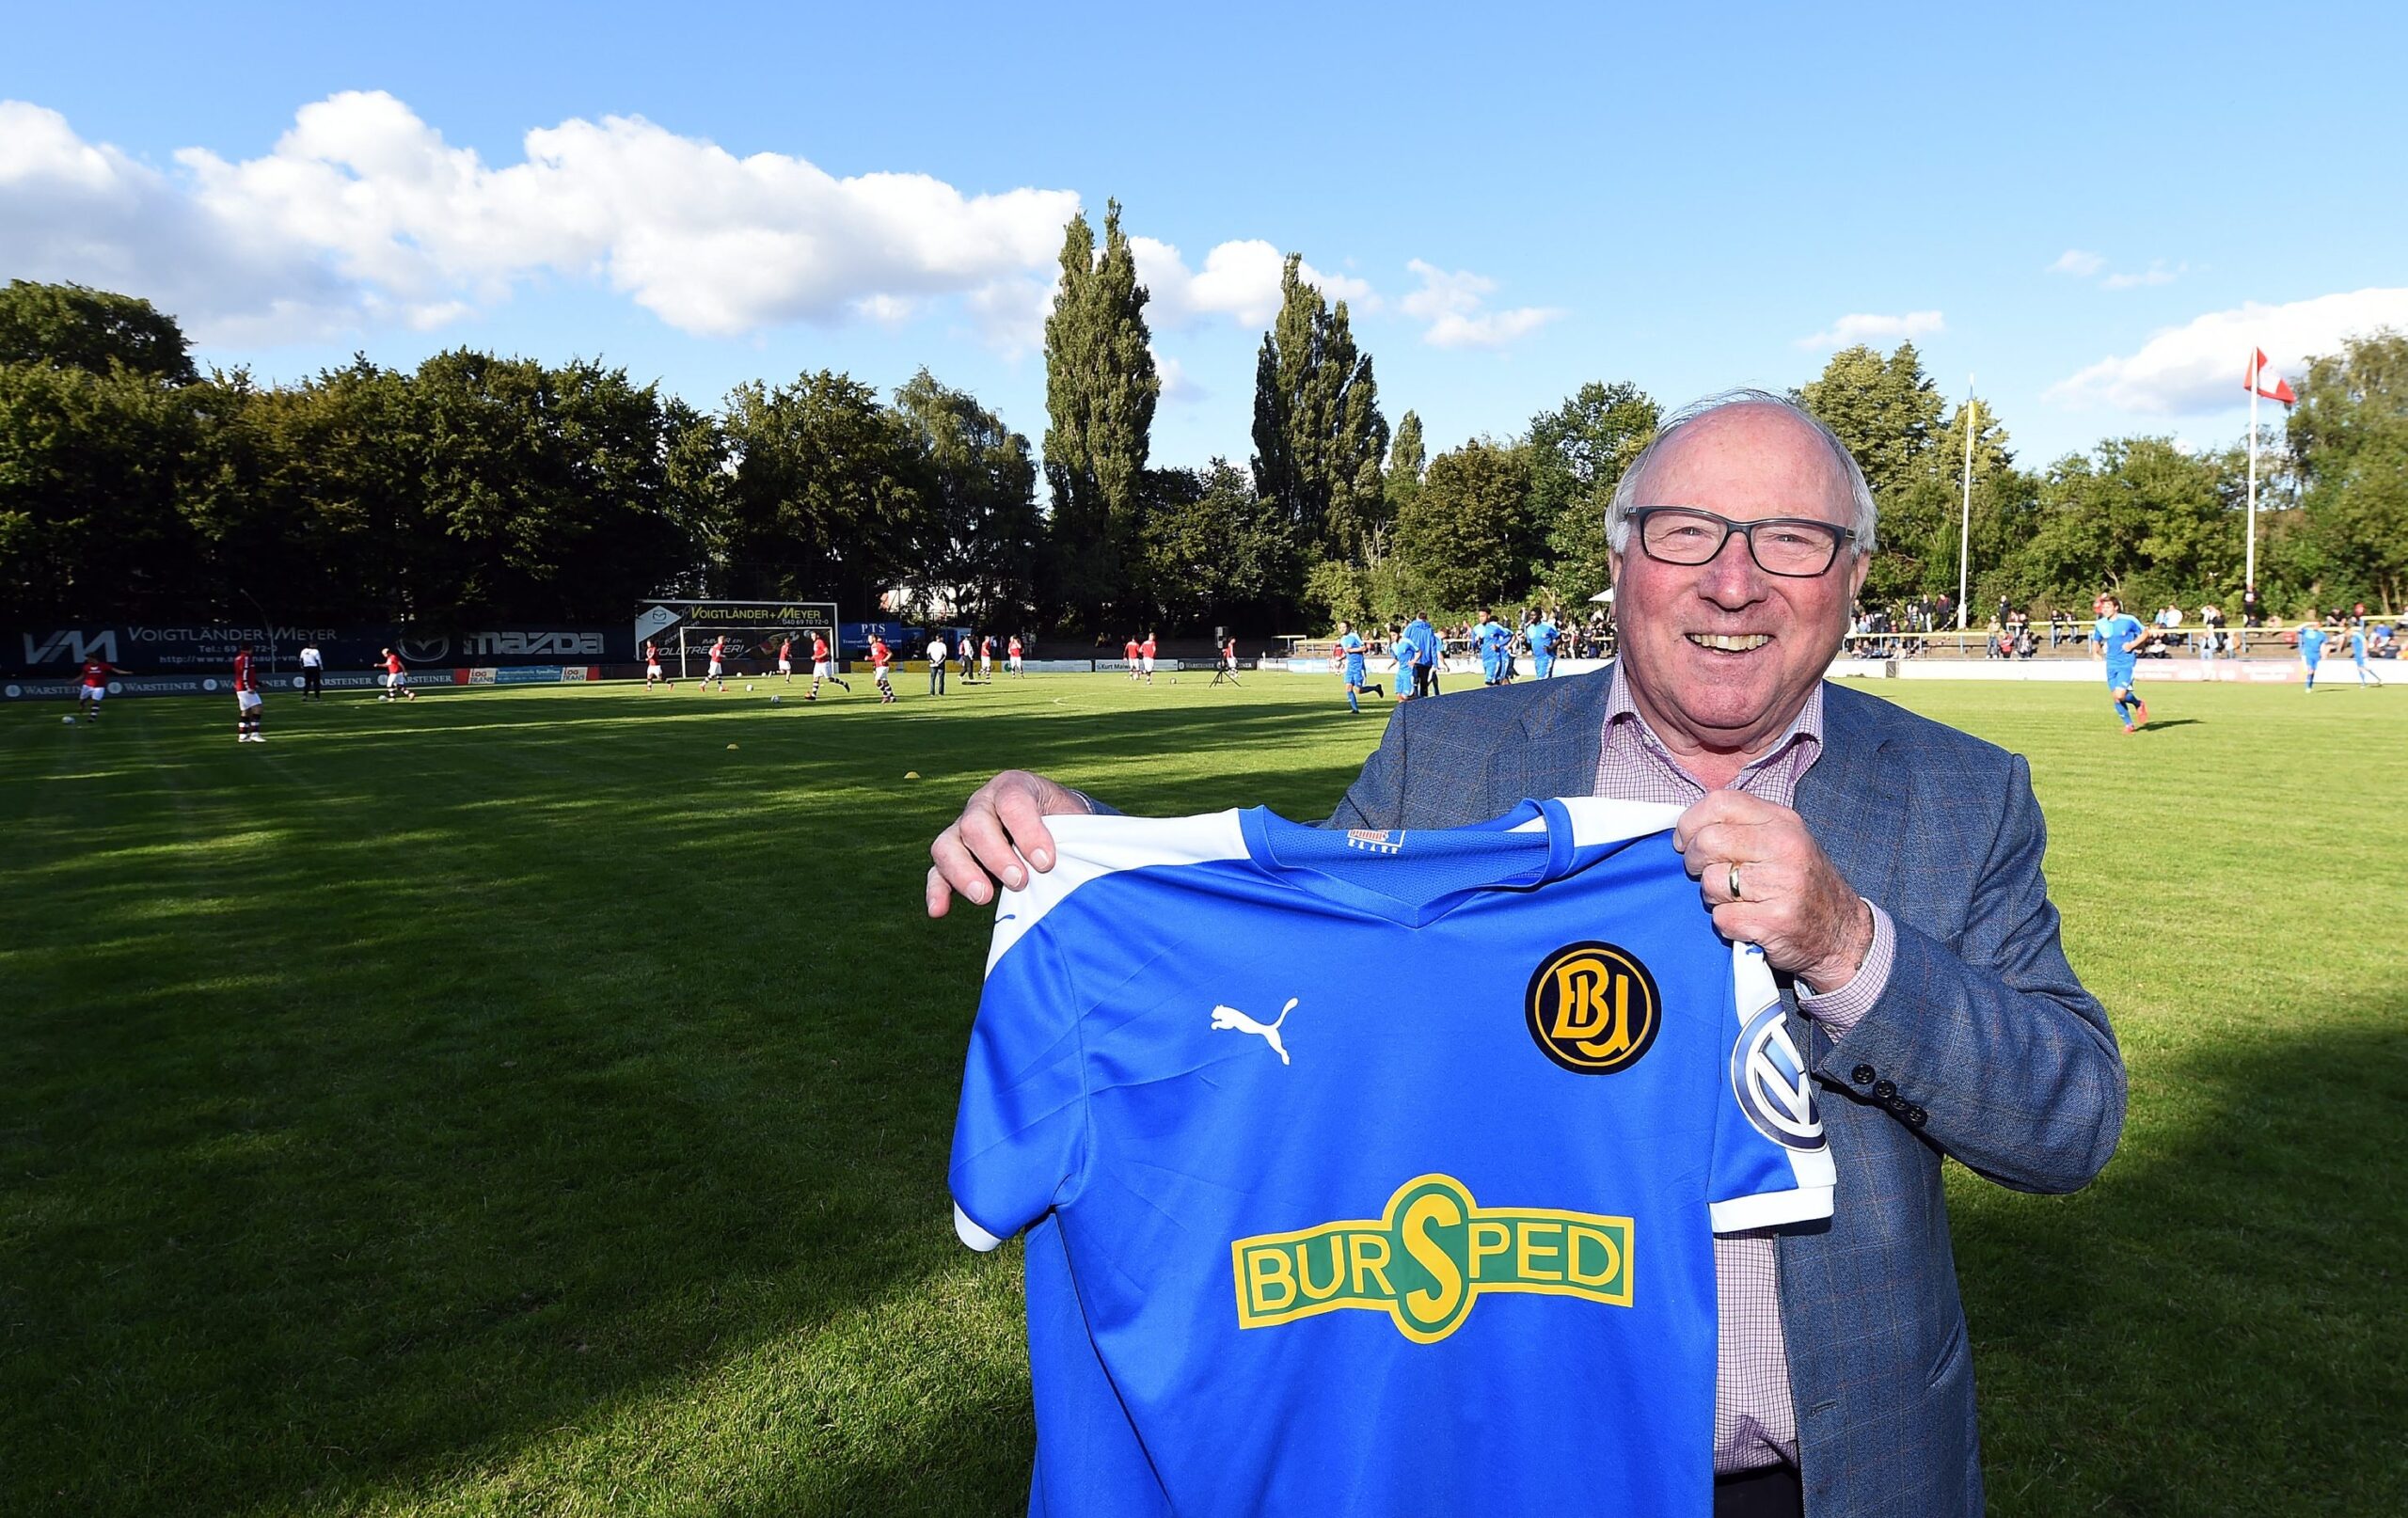 Als Barmbek-Uhlenhorst sich 2015 vom traditionsreichen Rupprechtplatz verabschiedete, hielt auch Uwe Seeler die BU-Farben hoch.